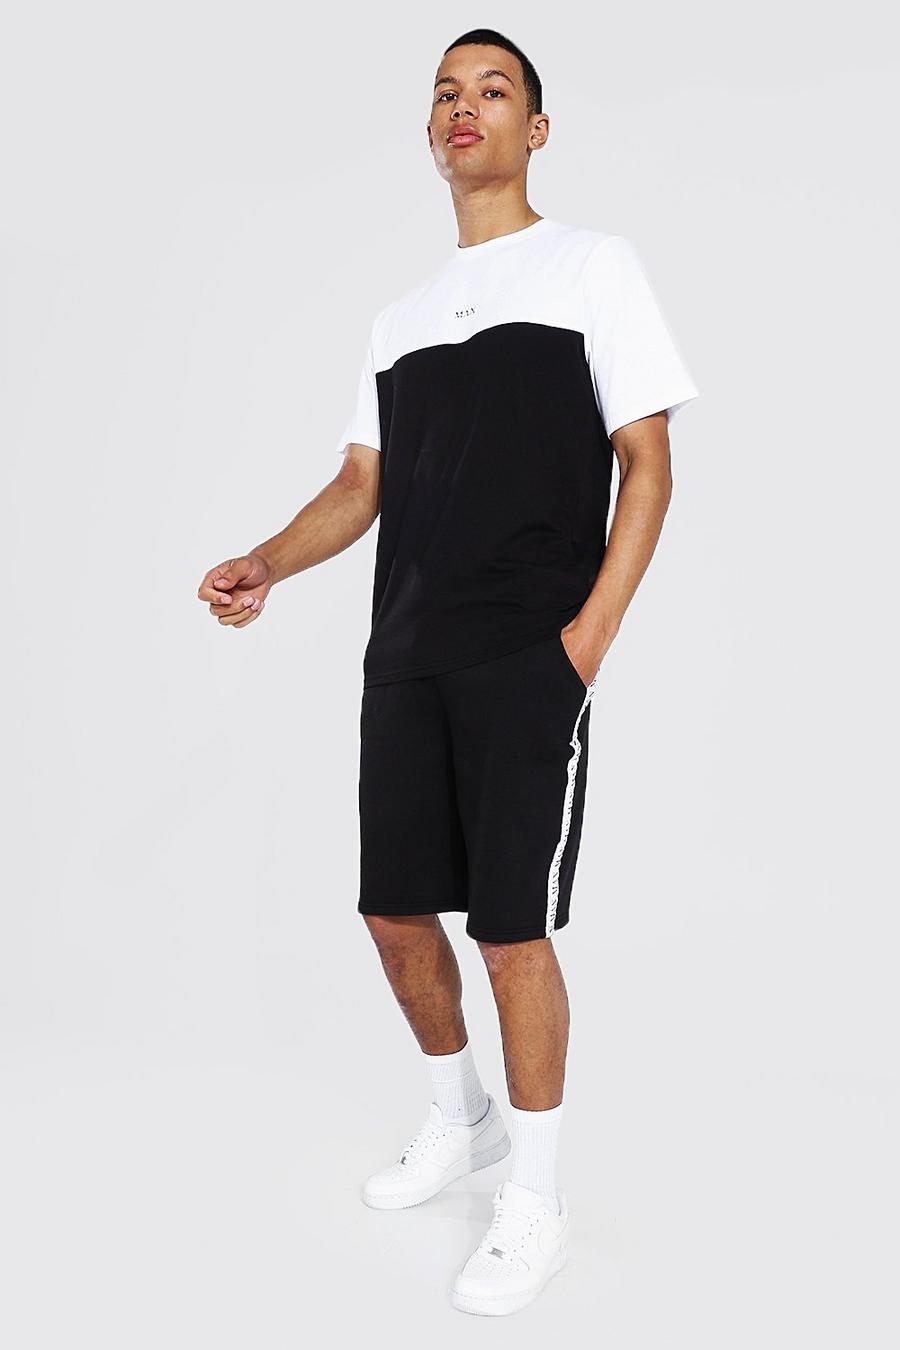 Black svart Tall - MAN T-shirt och shorts med blockfärger